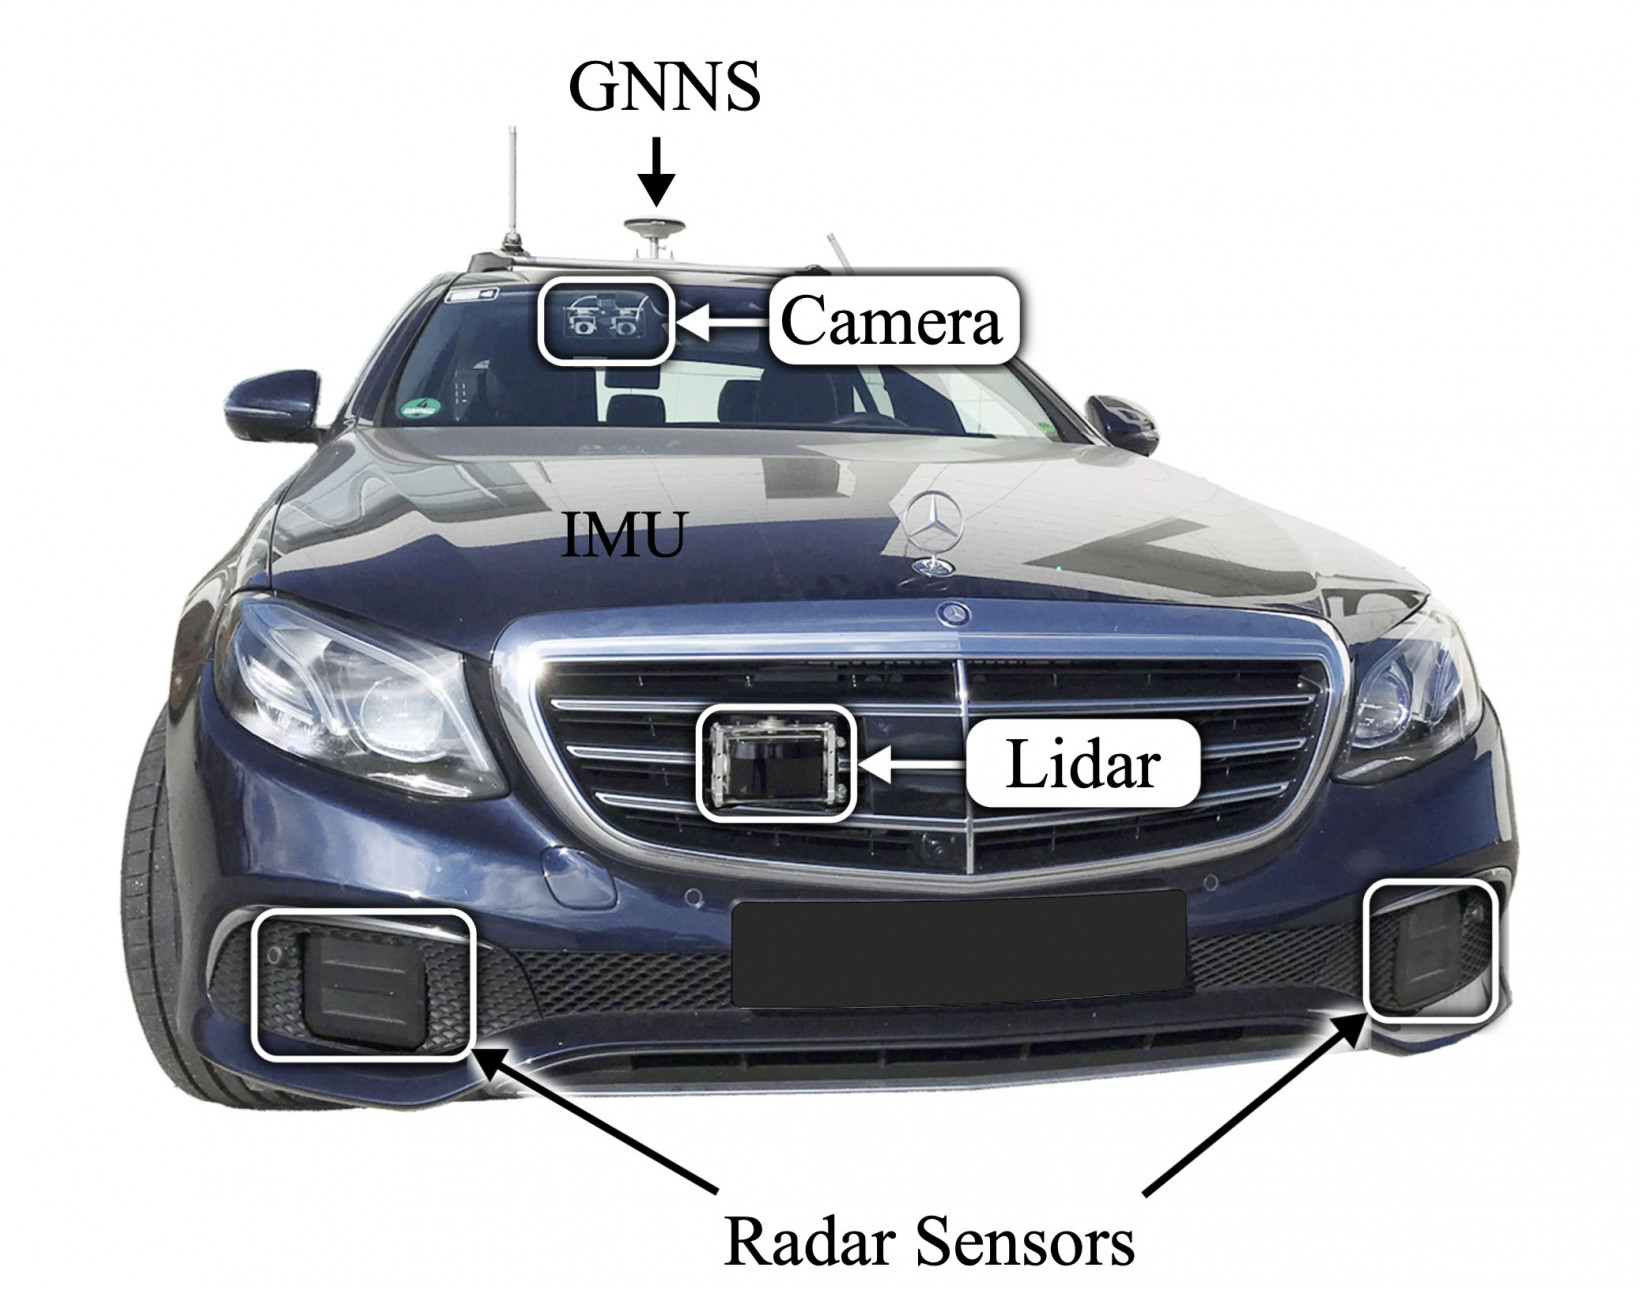 Ten radar pozwoli samochodom widzieć rzeczy znajdujące się